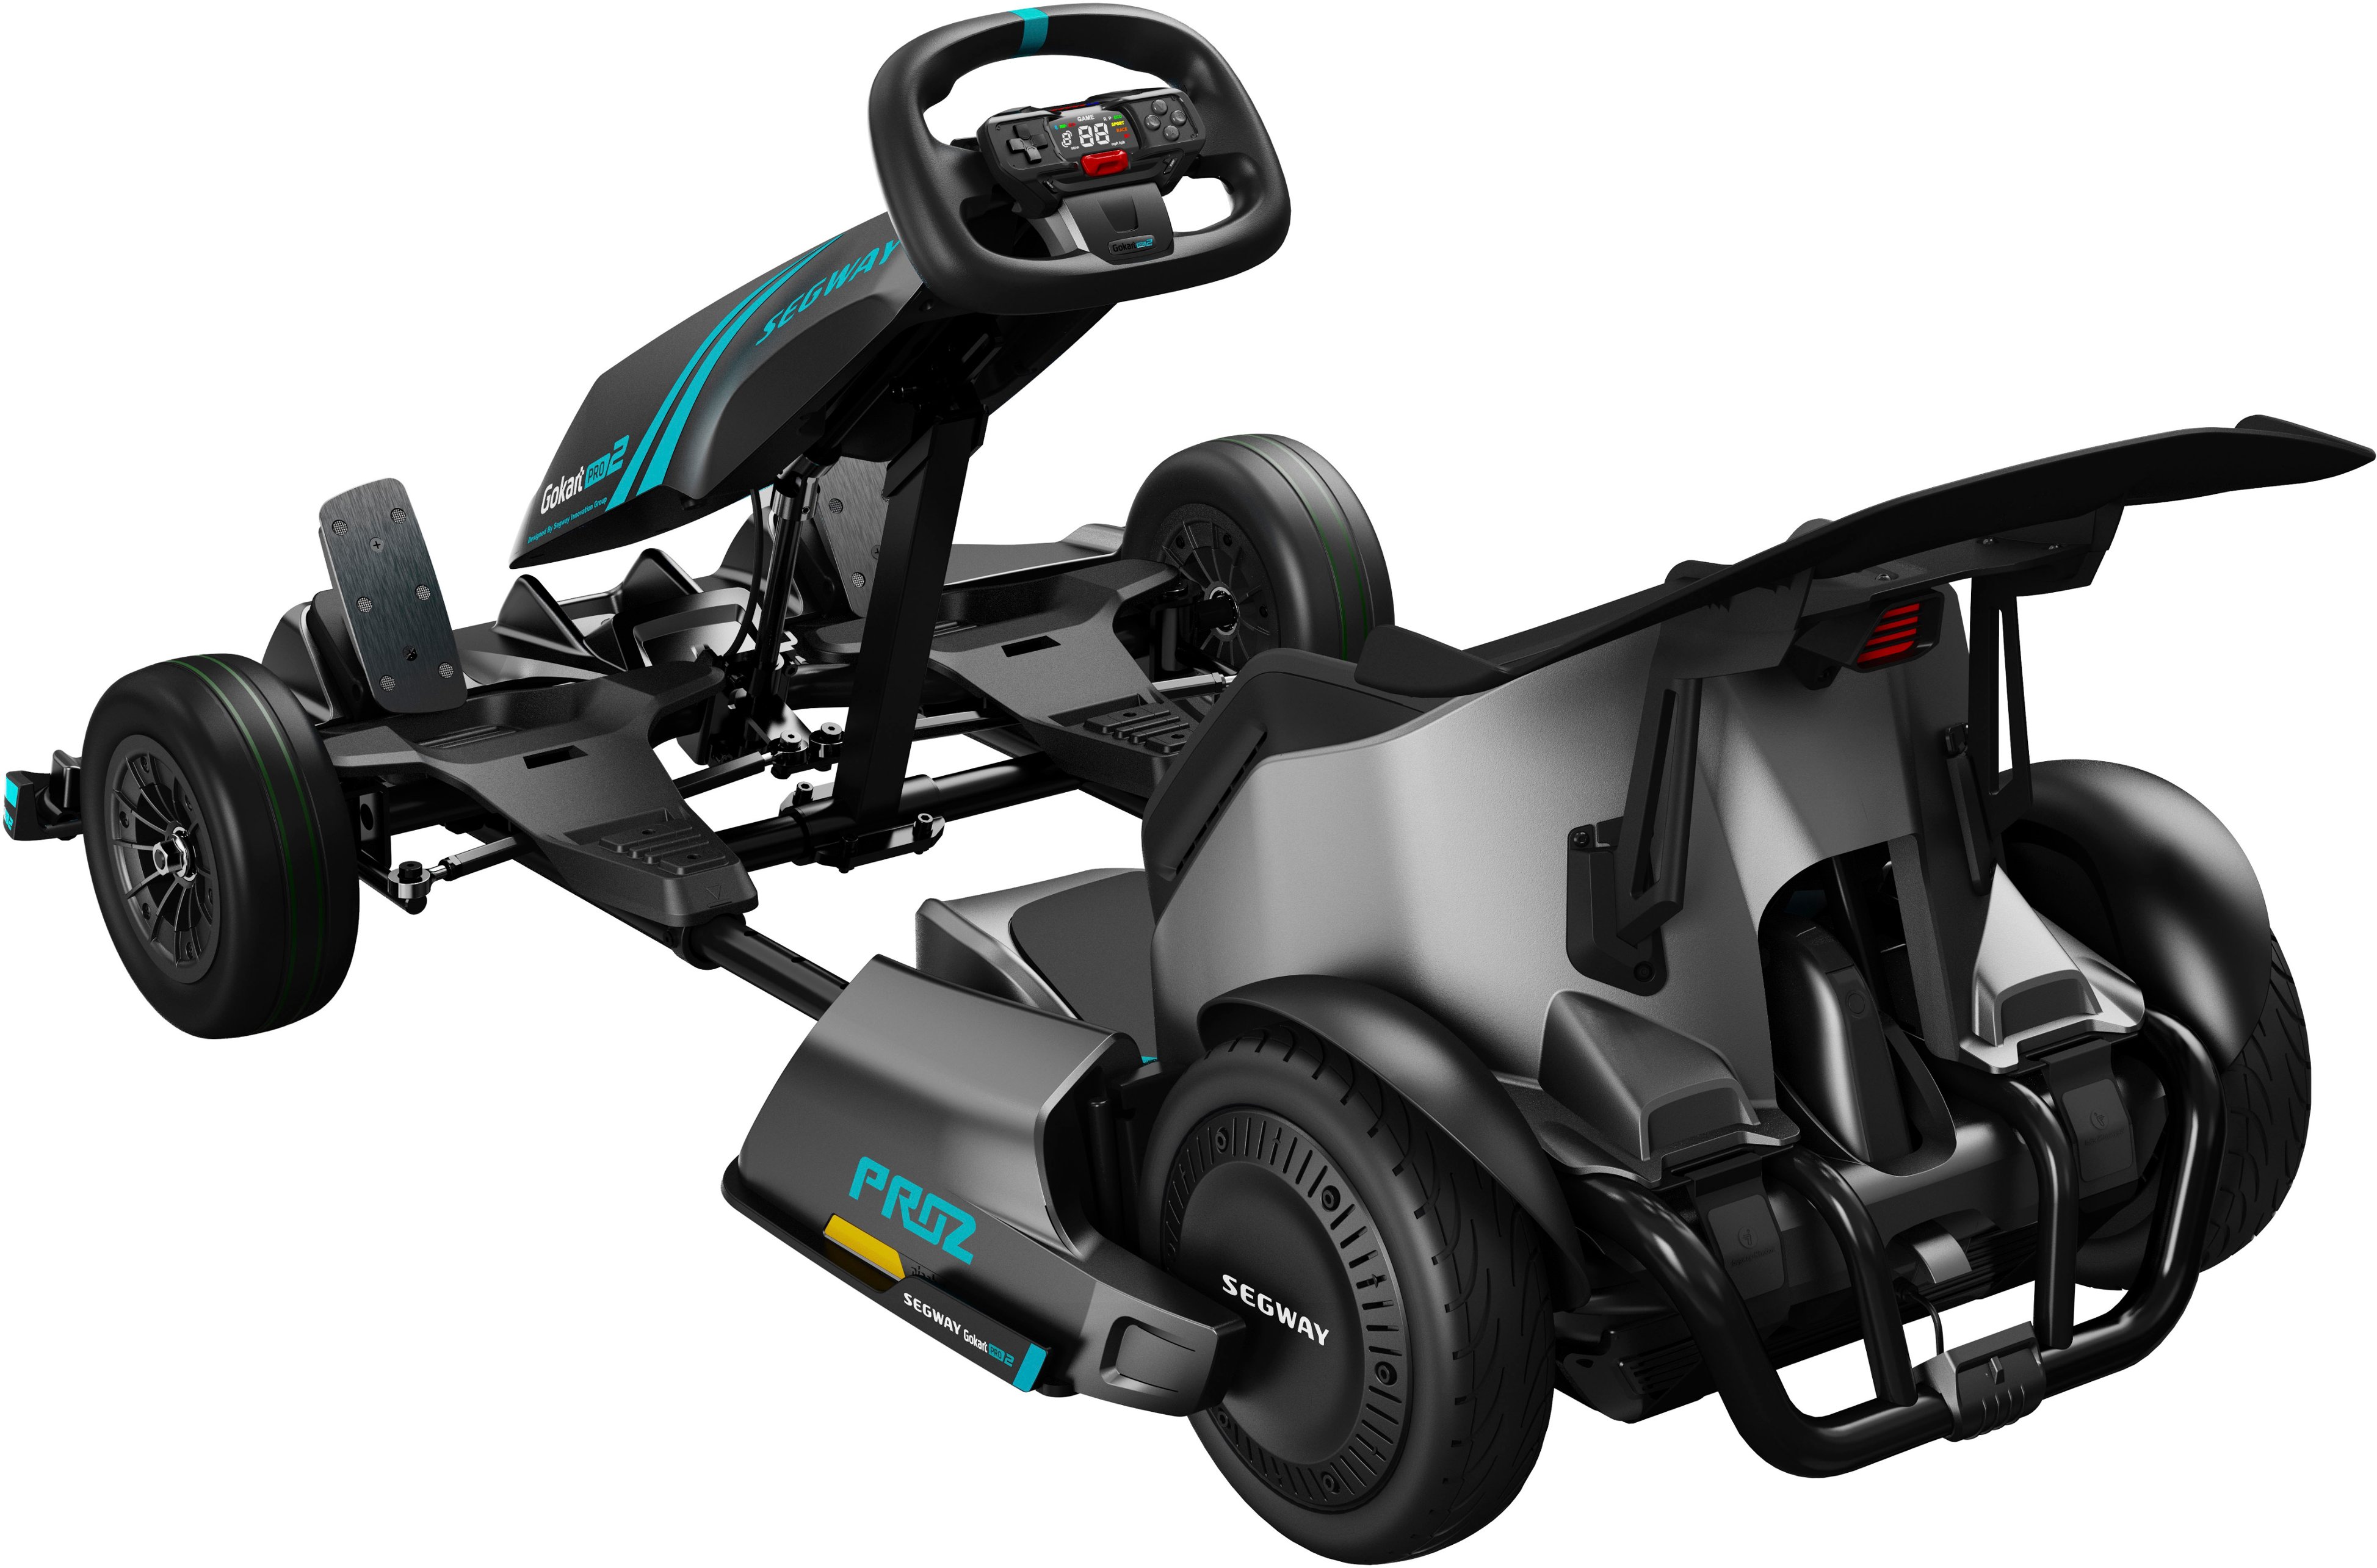 Segway Go Kart Pro 2 w/15.5 mi Max Operating Range & 26.7 mph Max Speed  Gray AA.04.04.01.0002 - Best Buy